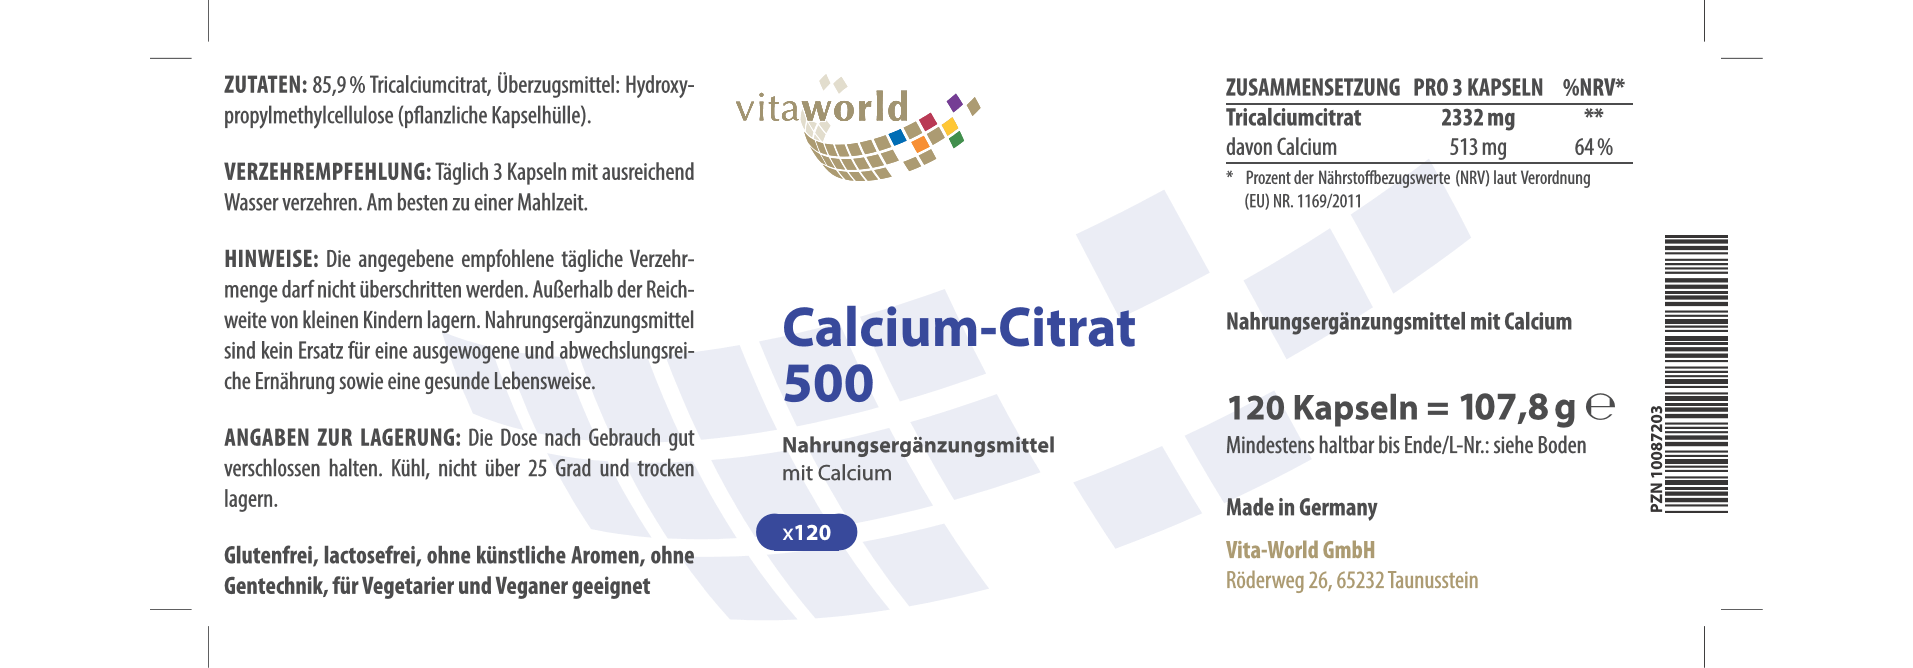 Calcium-Citrat 500 (120 Kps)